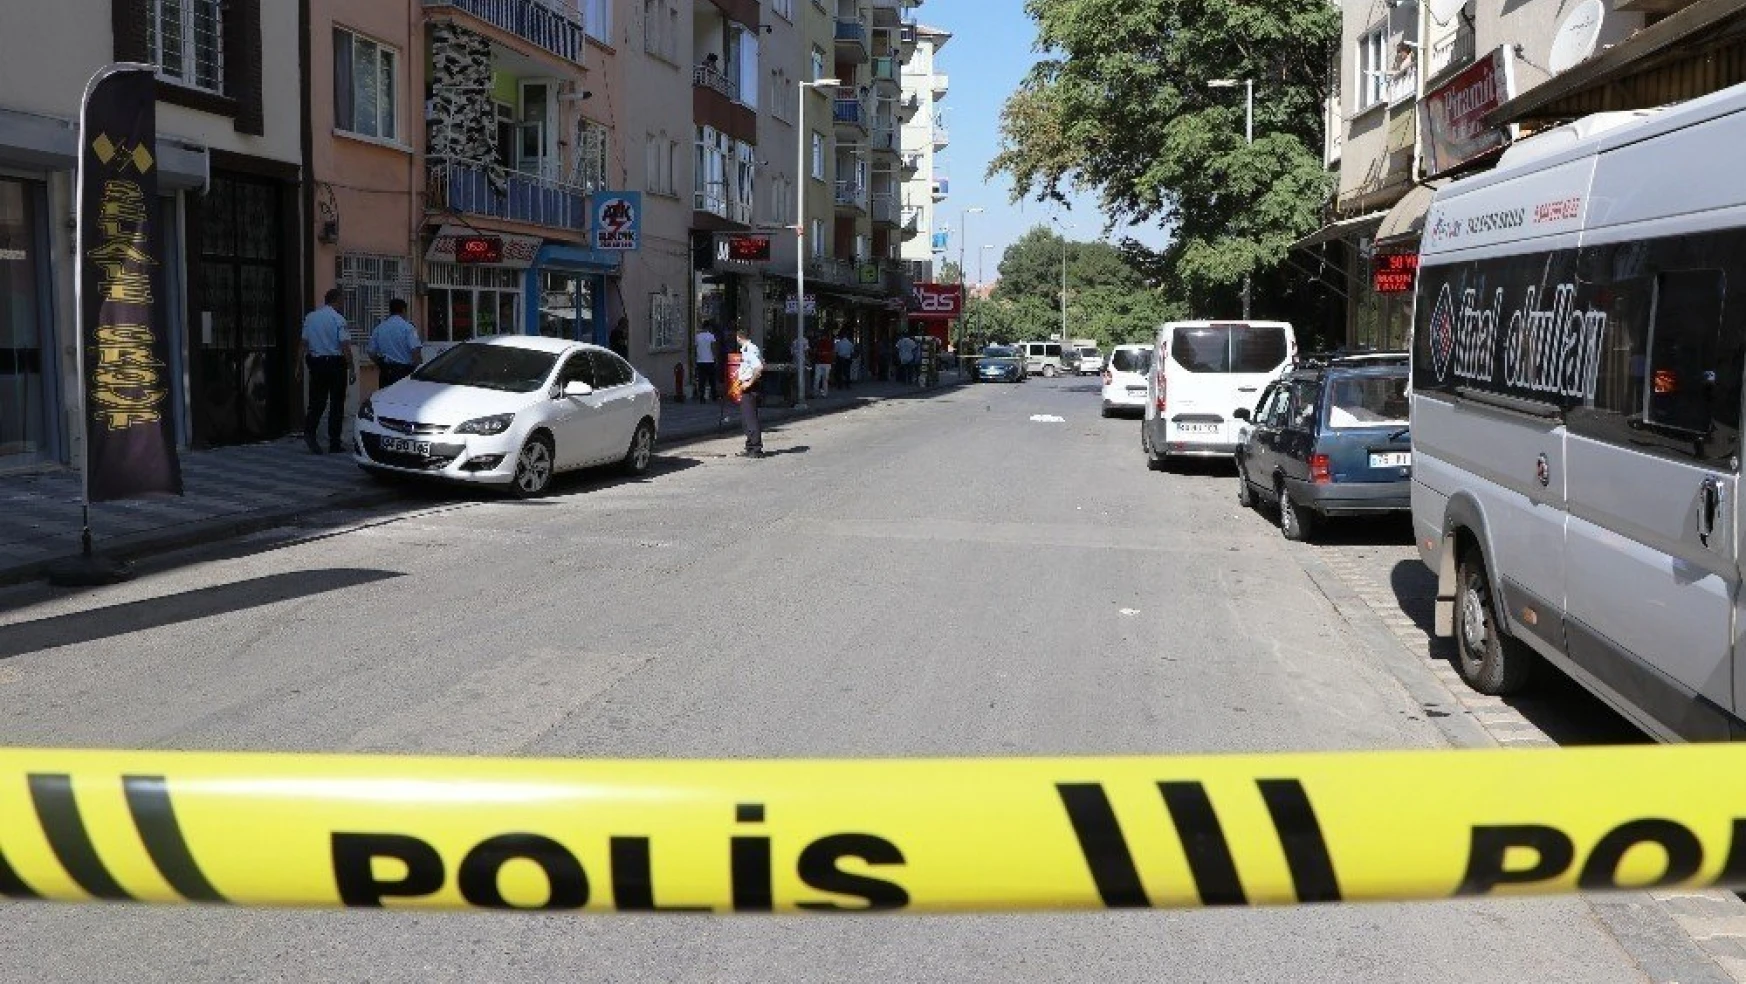 Malatya'da silahlı kavga: 1 ölü